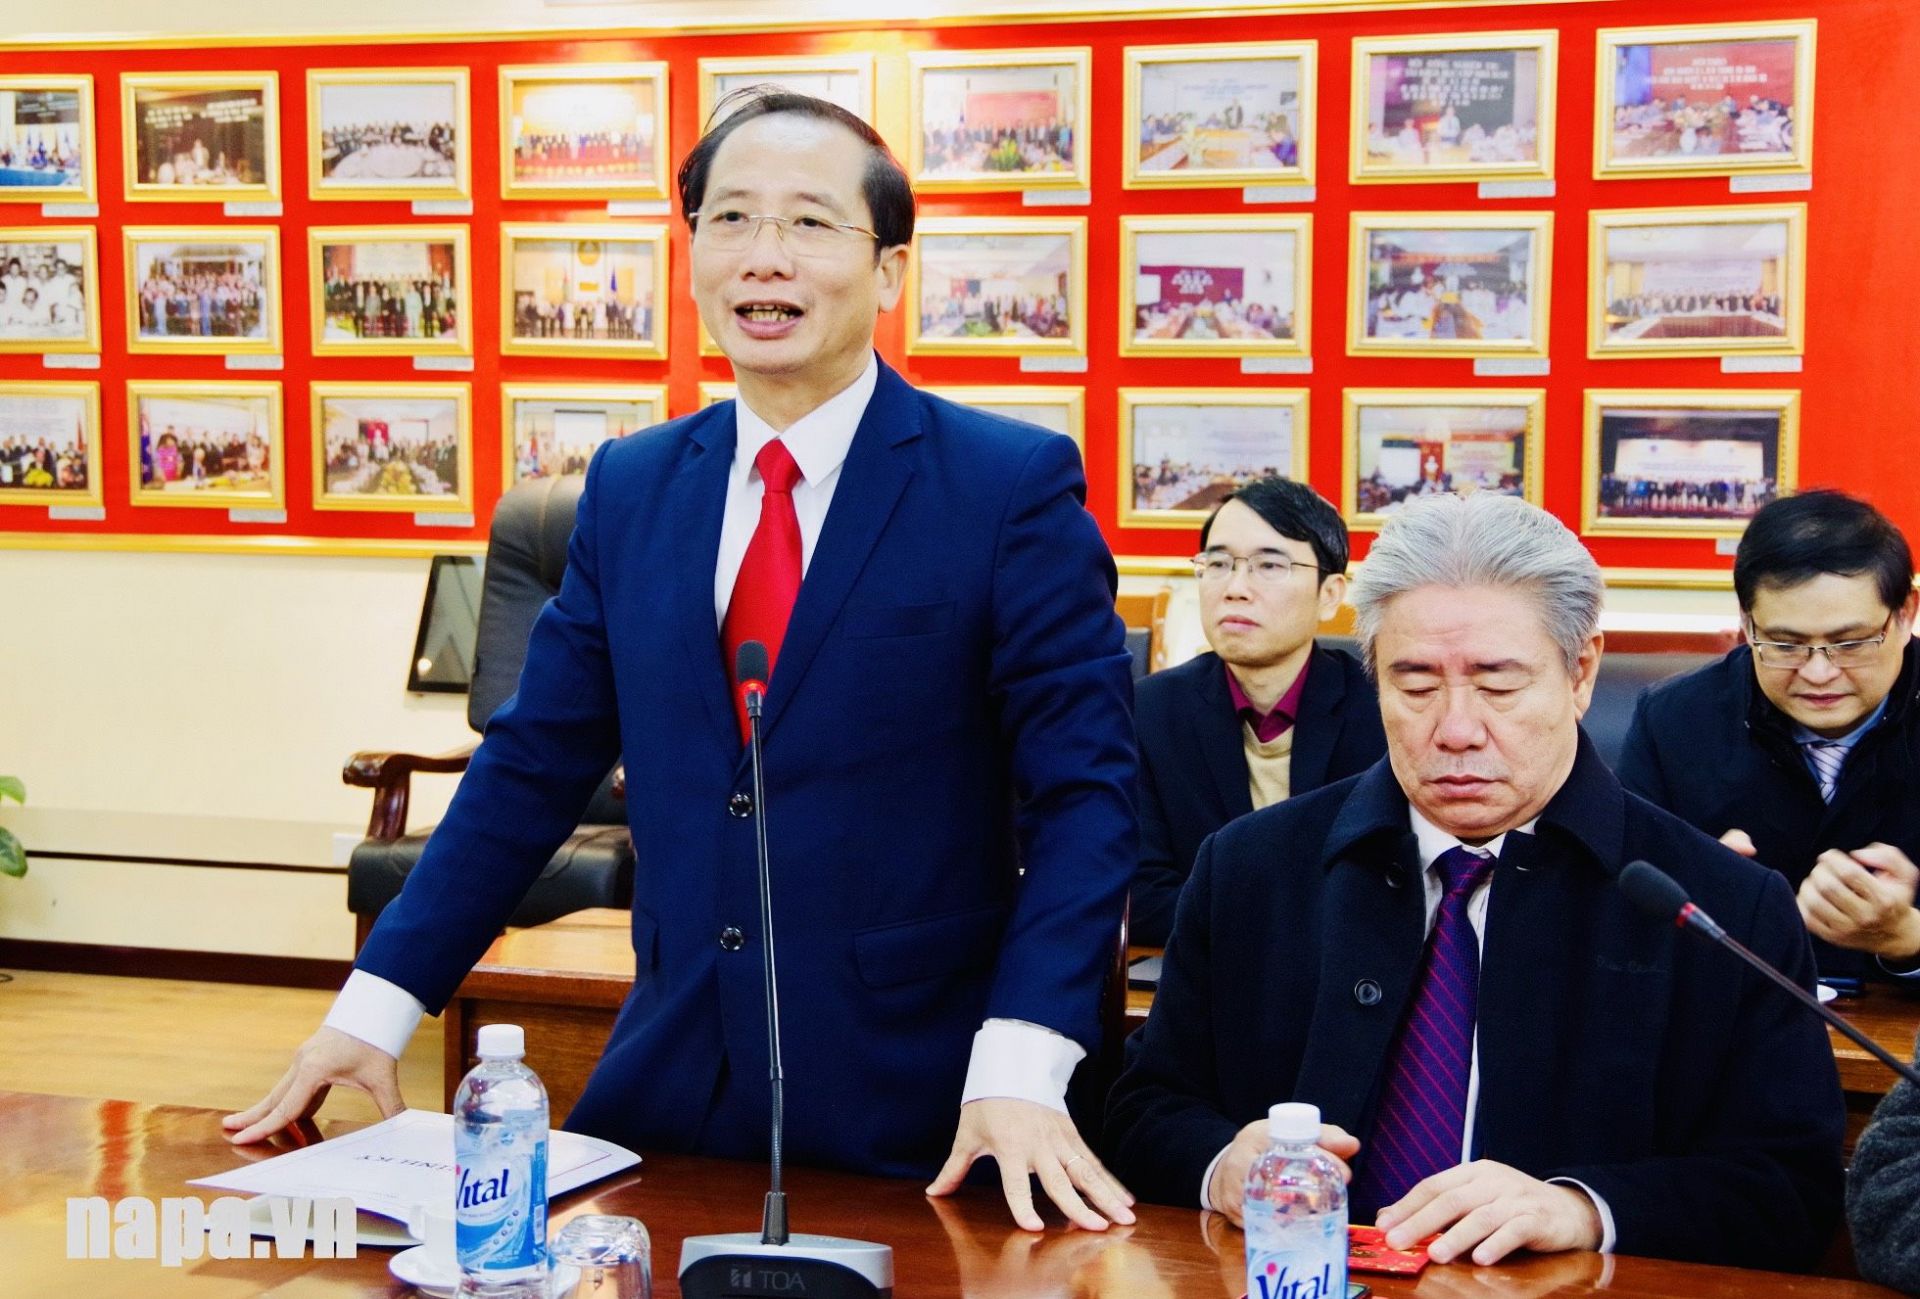 PGS.TS Nguyễn Bá Chiến, Quyền Giám đốc Học viện Hành chính Quốc gia phát biểu tại buổi gặp mặt đầu xuân và tiếp thu chỉ đạo của Bộ trưởng.